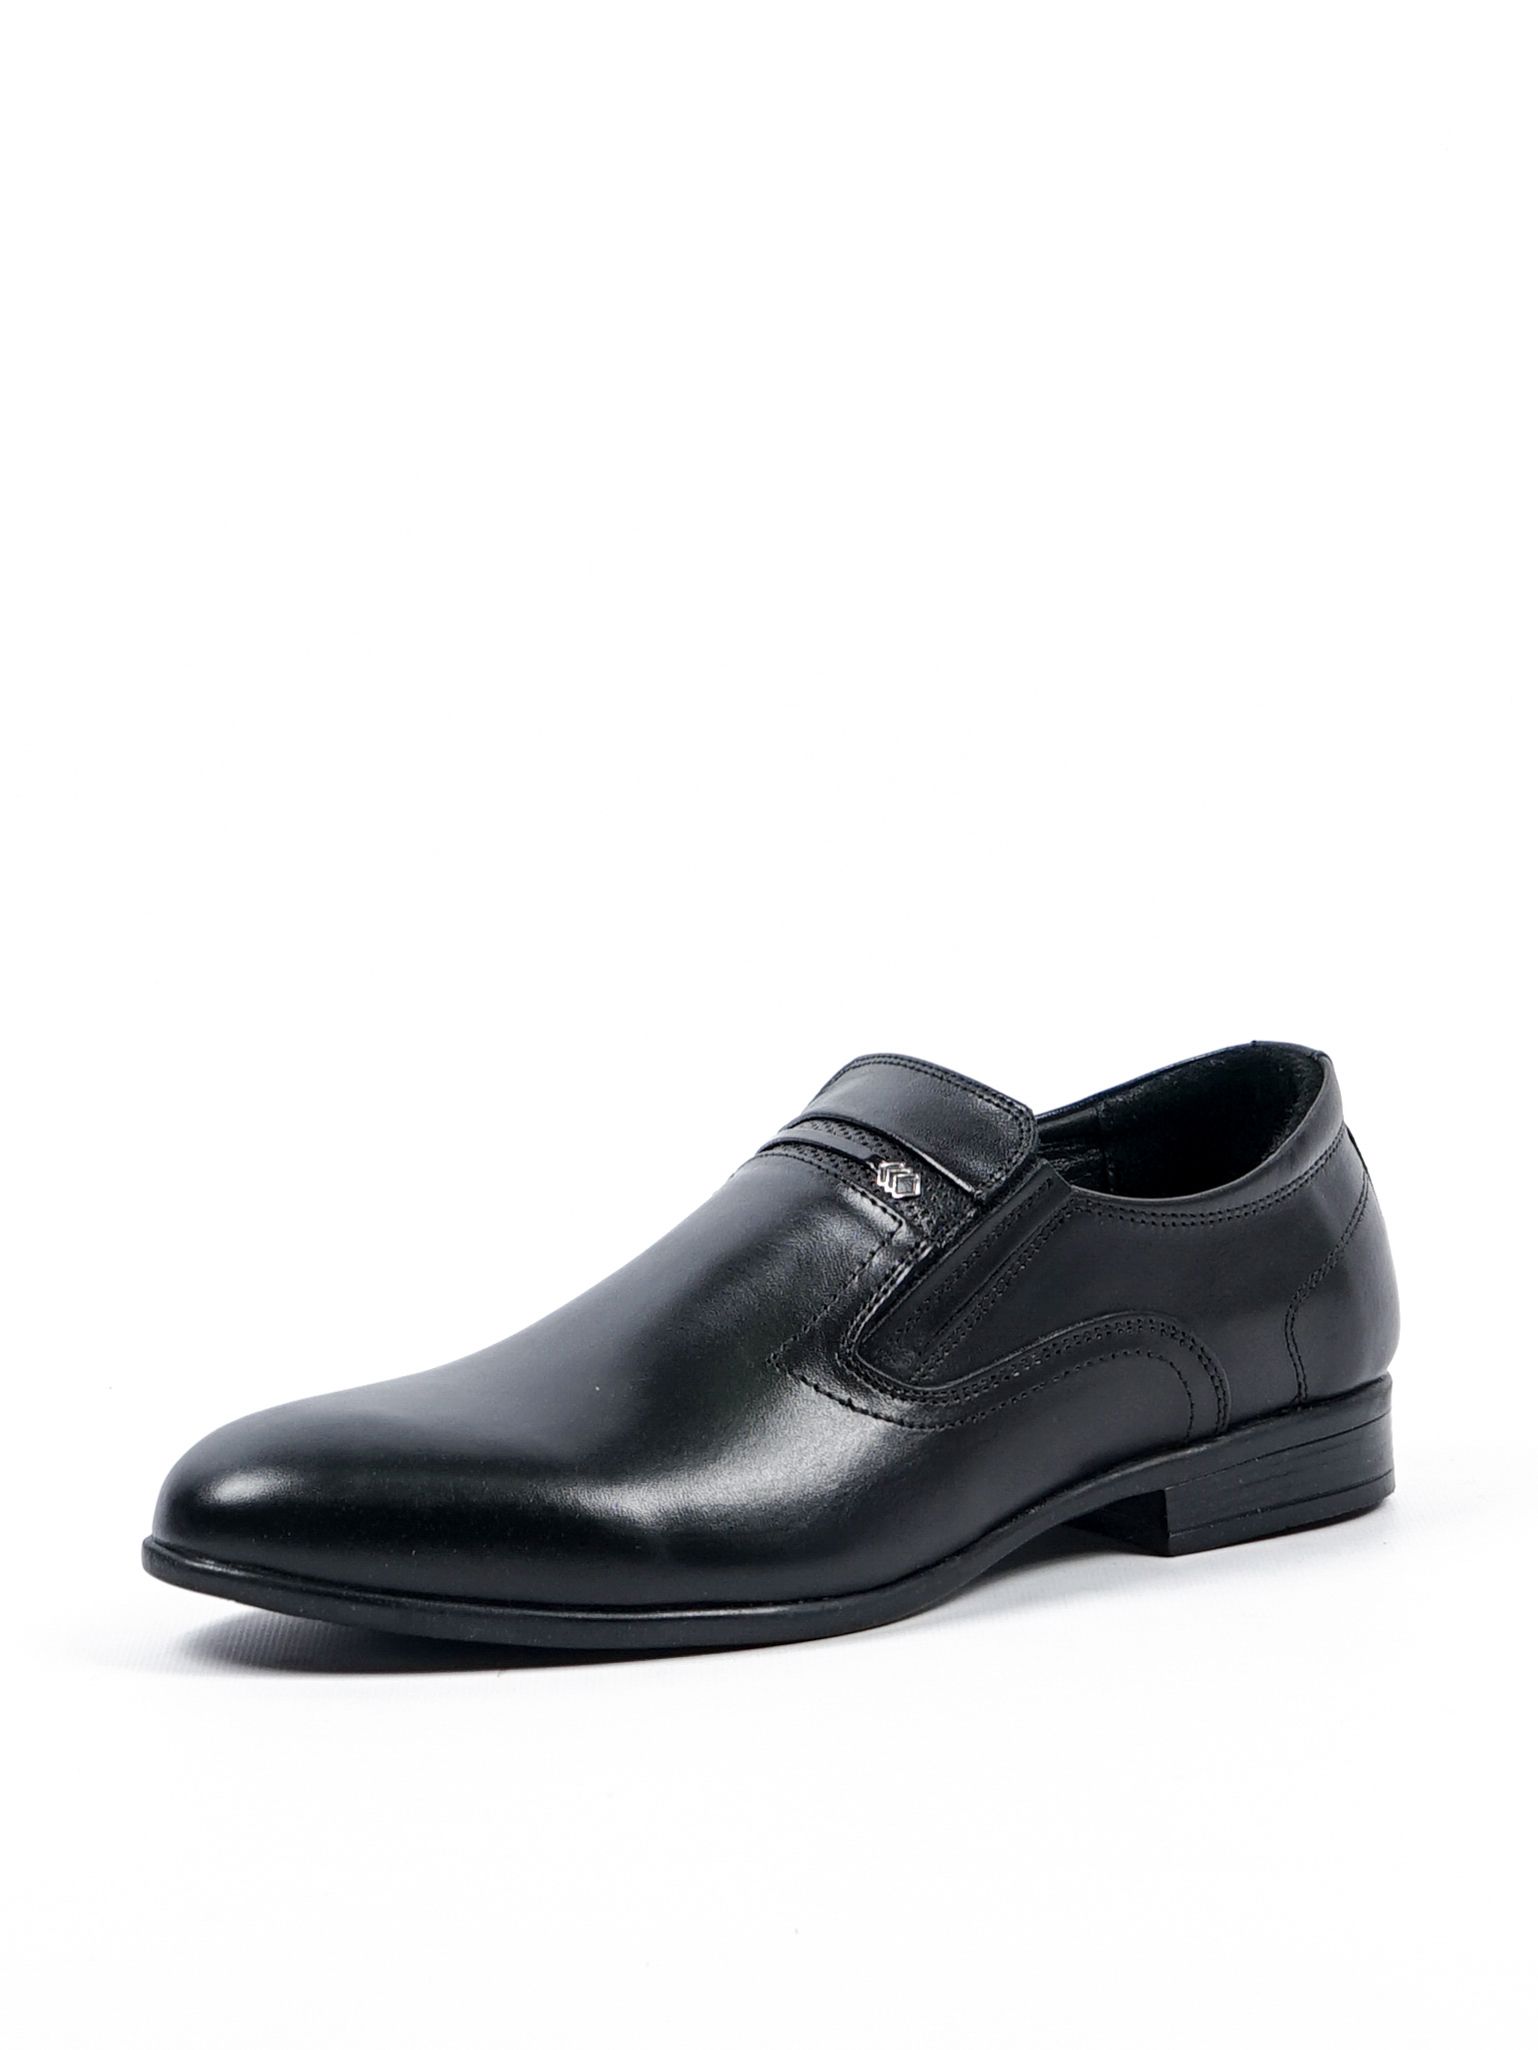 Туфли мужские Comfort Shoes 1099 черные 43 RU